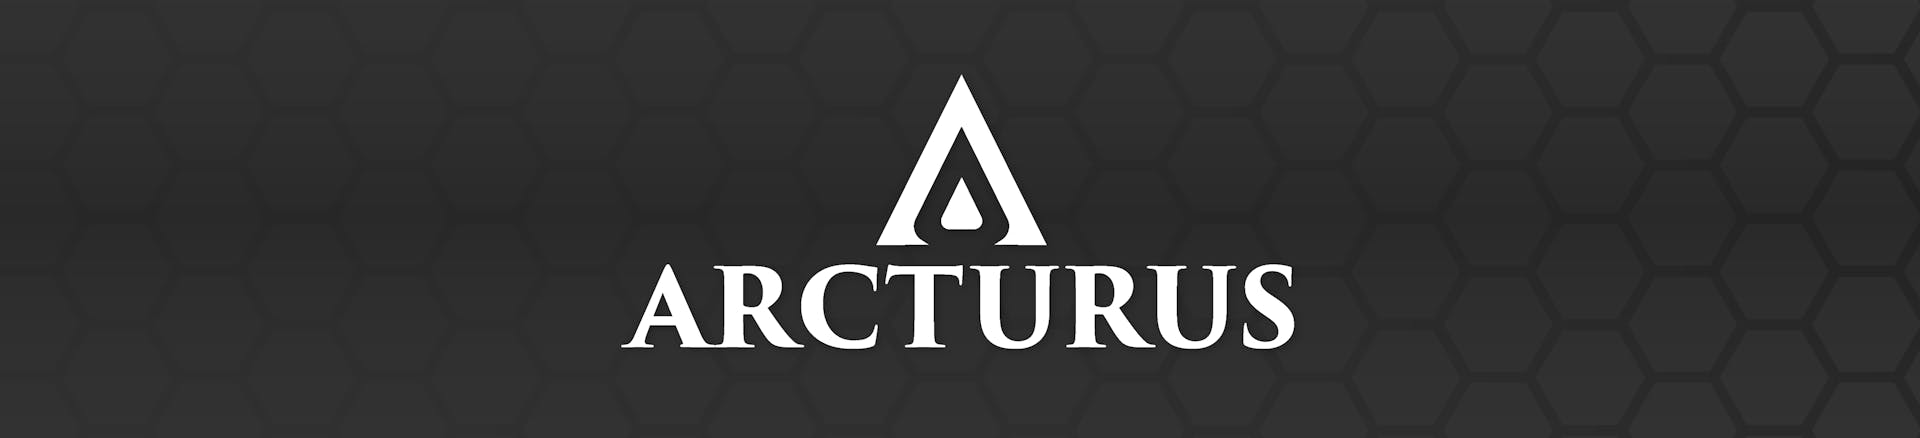 Arcturus Airsoft